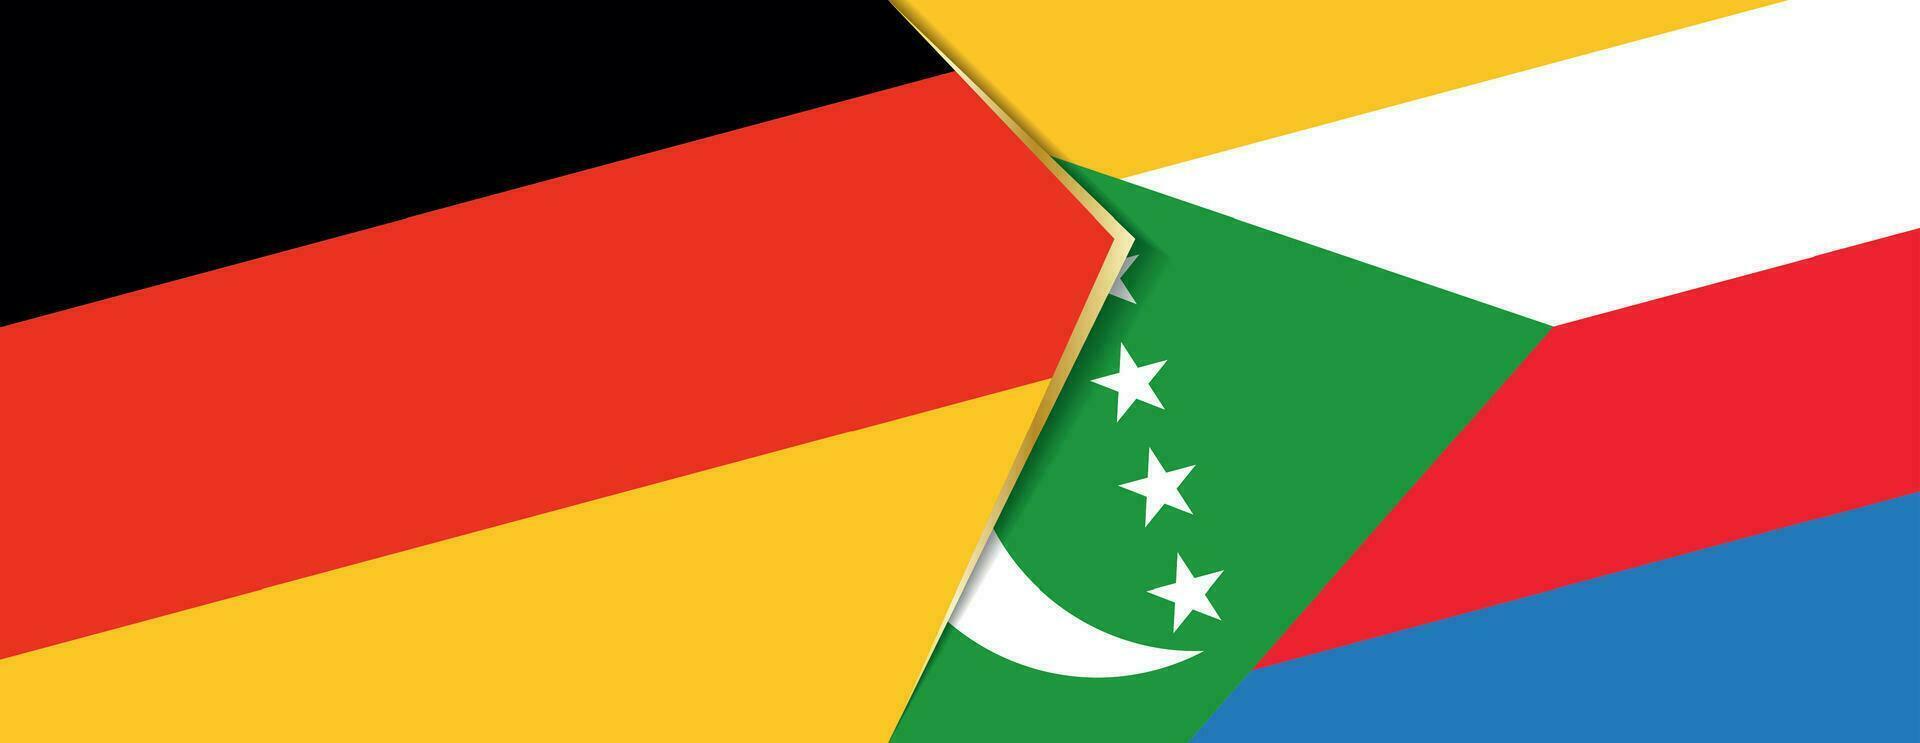 Alemania y comoras banderas, dos vector banderas